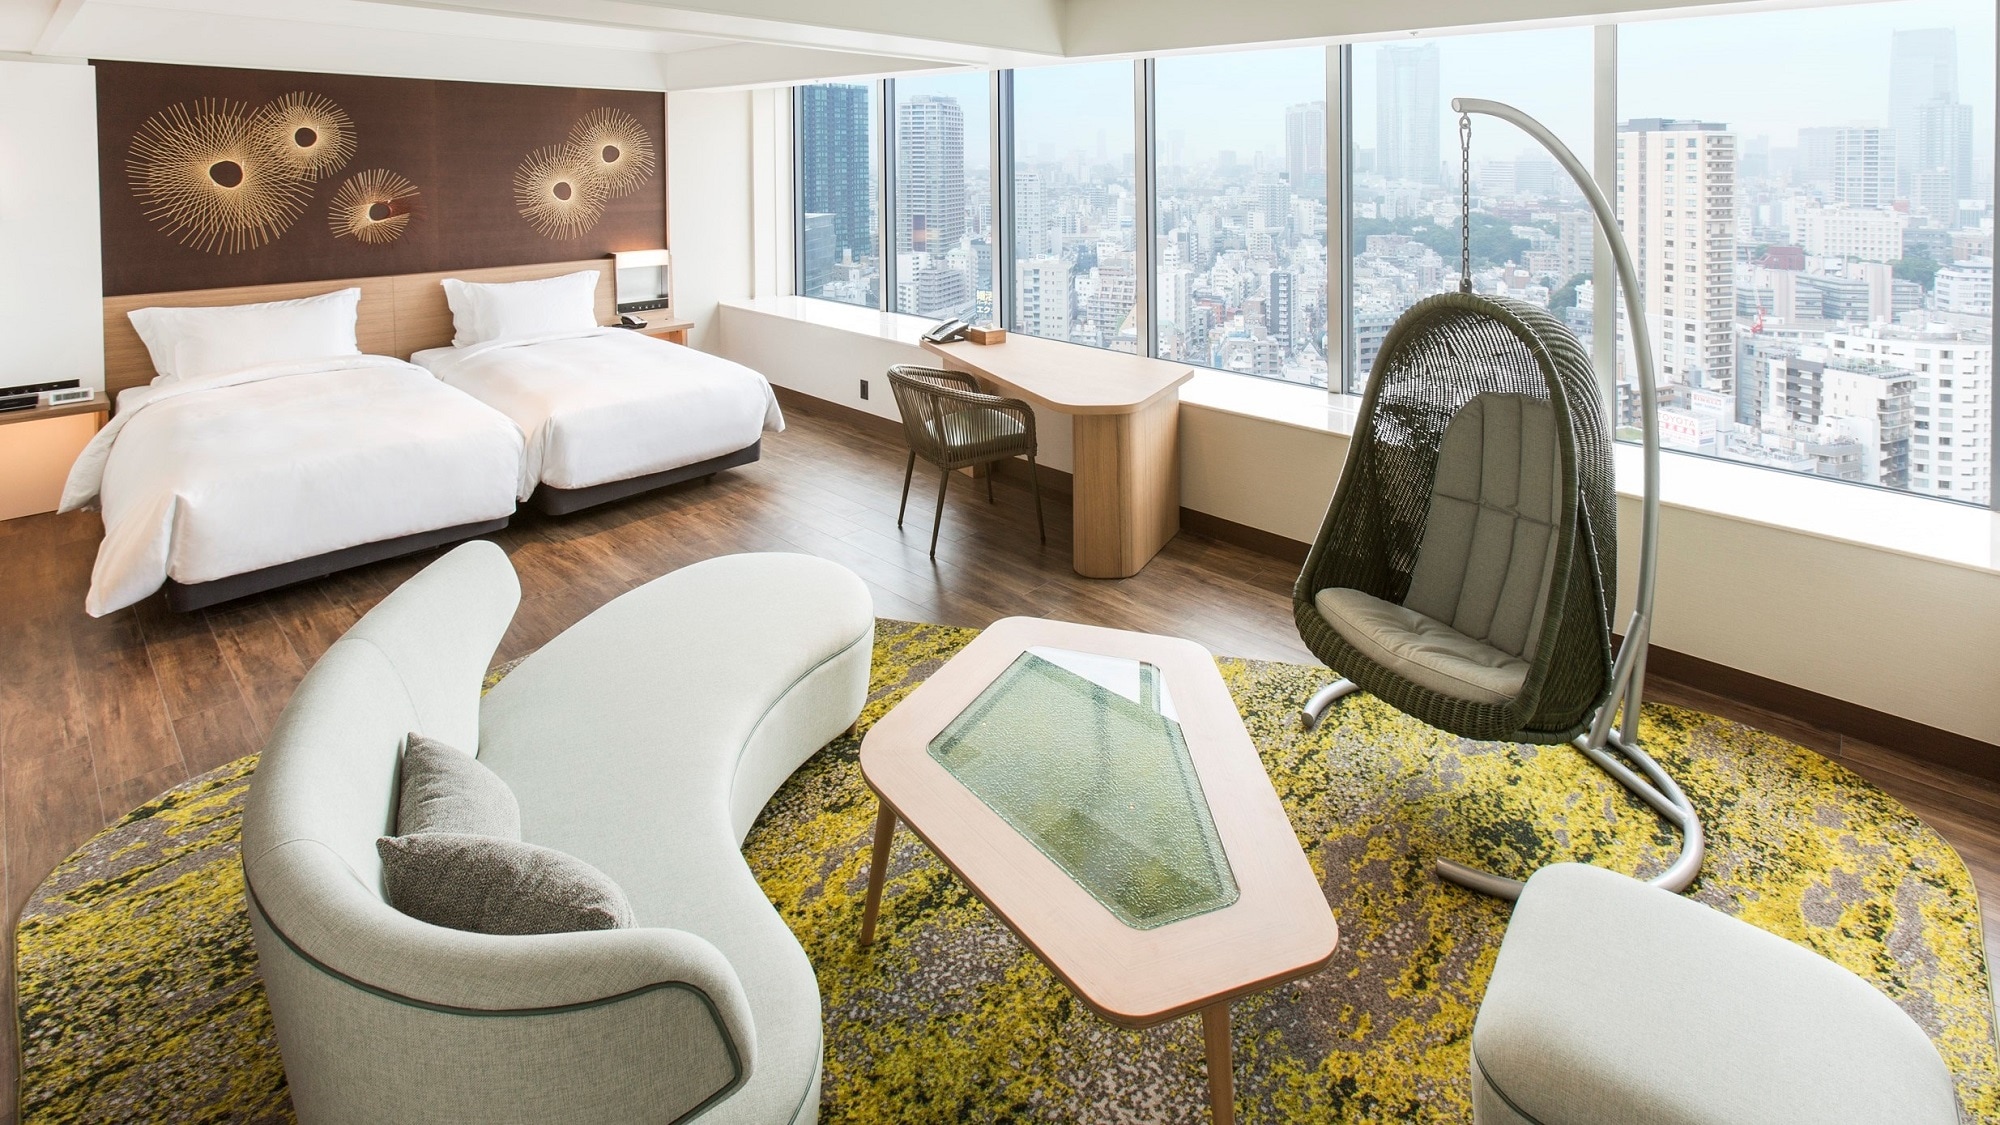 Premium Junior Suite Room (29th to 31st floors, 50 square meters)